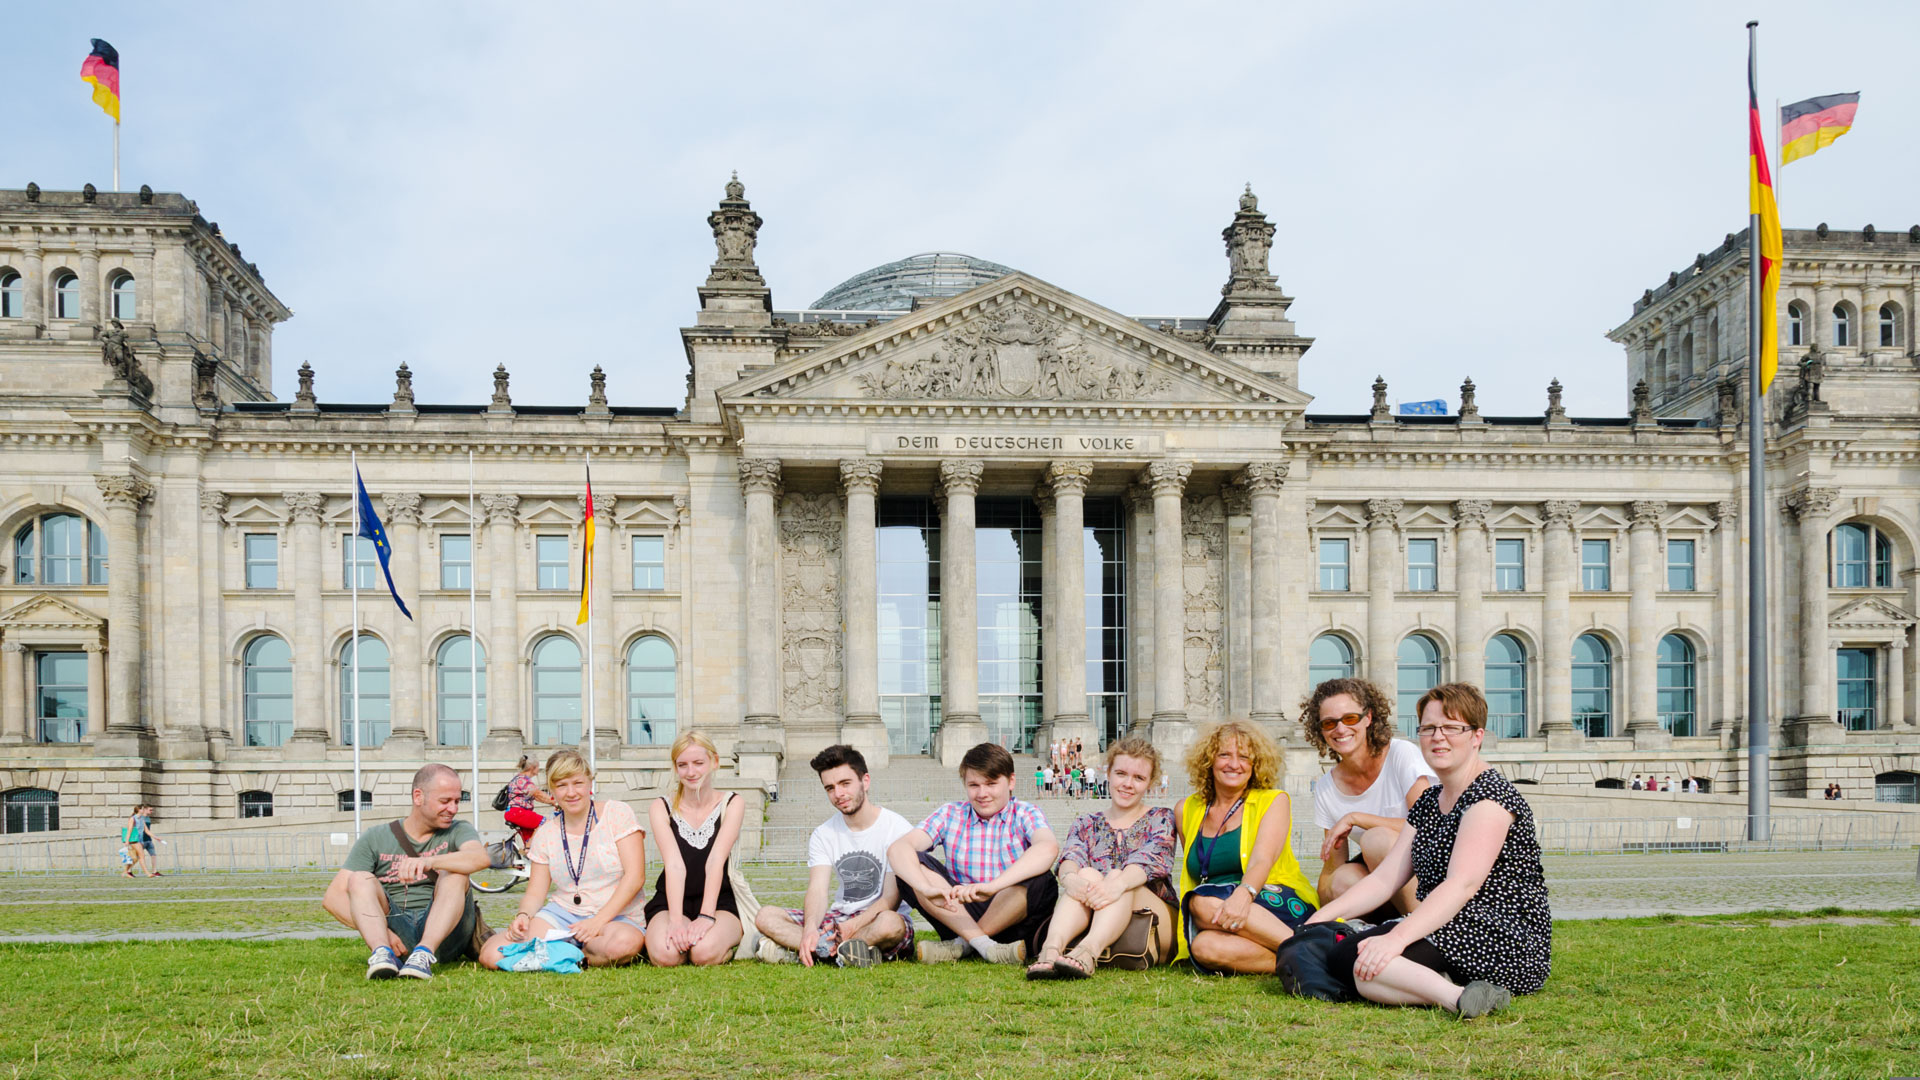 Le passeggiate in città, qui al Reichstag, fanno parte del programma per il tempo libero.